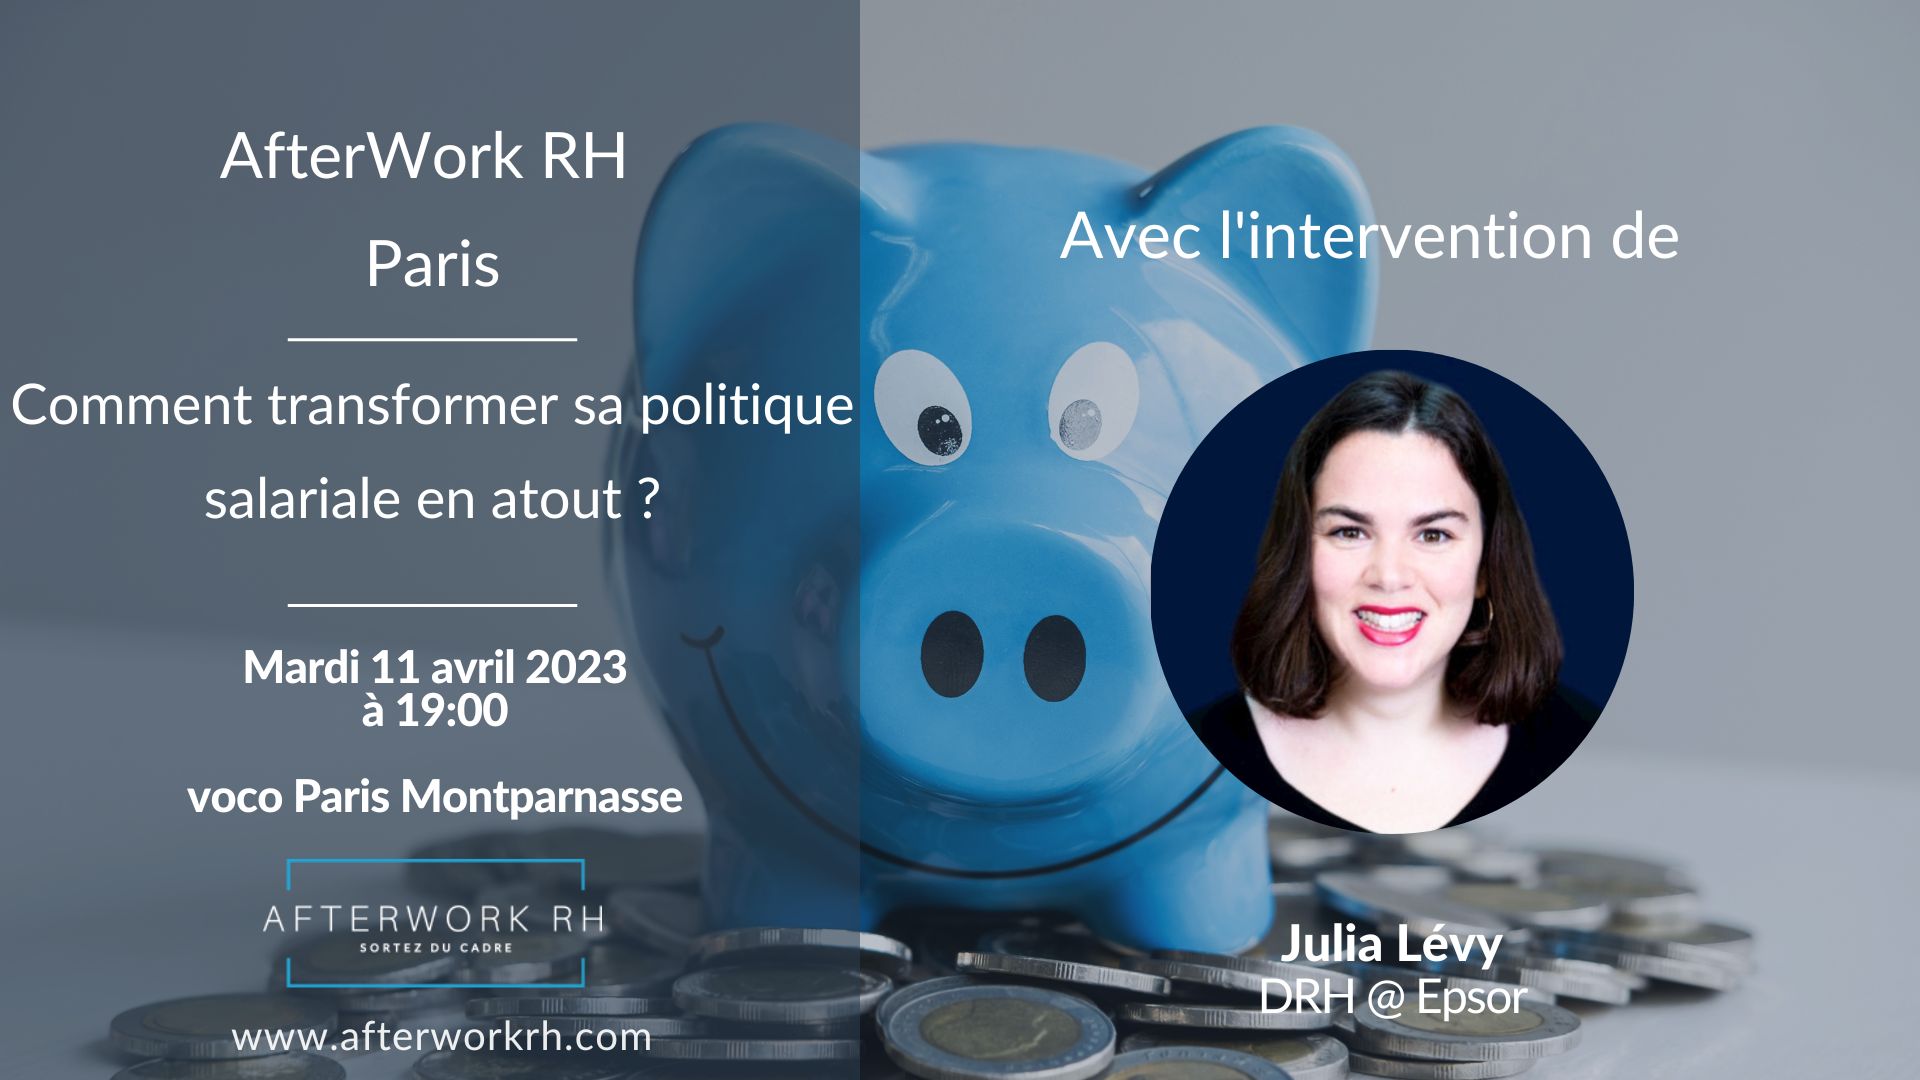 AfterWork RH Paris - Avril 23 - Julia Lévy - comment transformer sa politique salariale en atout